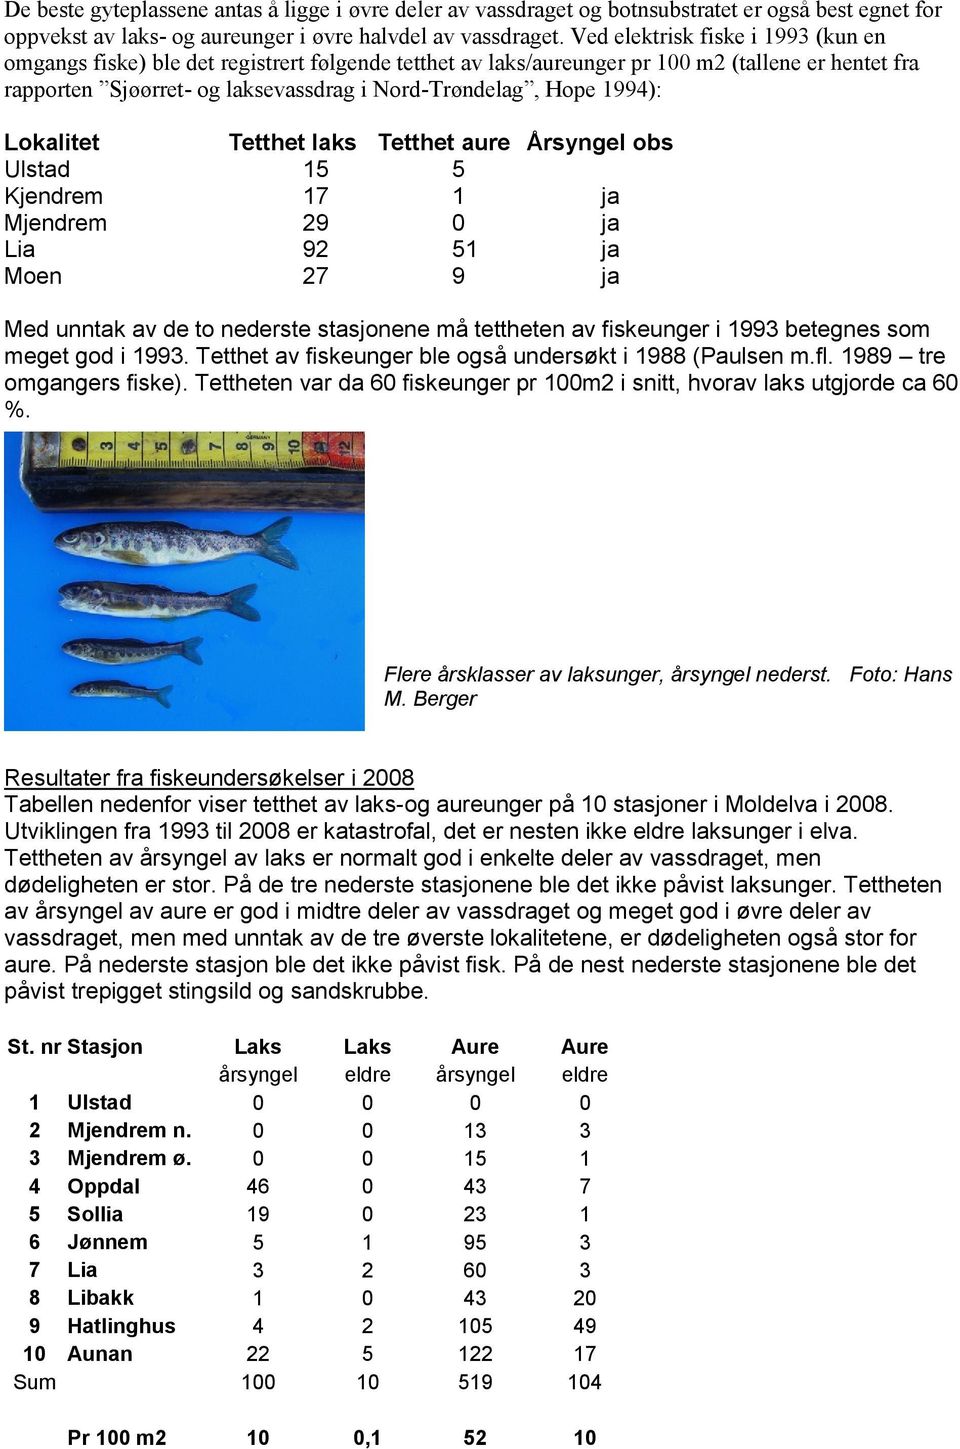 1994): Lokalitet Tetthet laks Tetthet aure Årsyngel obs Ulstad 15 5 Kjendrem 17 1 ja Mjendrem 29 0 ja Lia 92 51 ja Moen 27 9 ja Med unntak av de to nederste stasjonene må tettheten av fiskeunger i